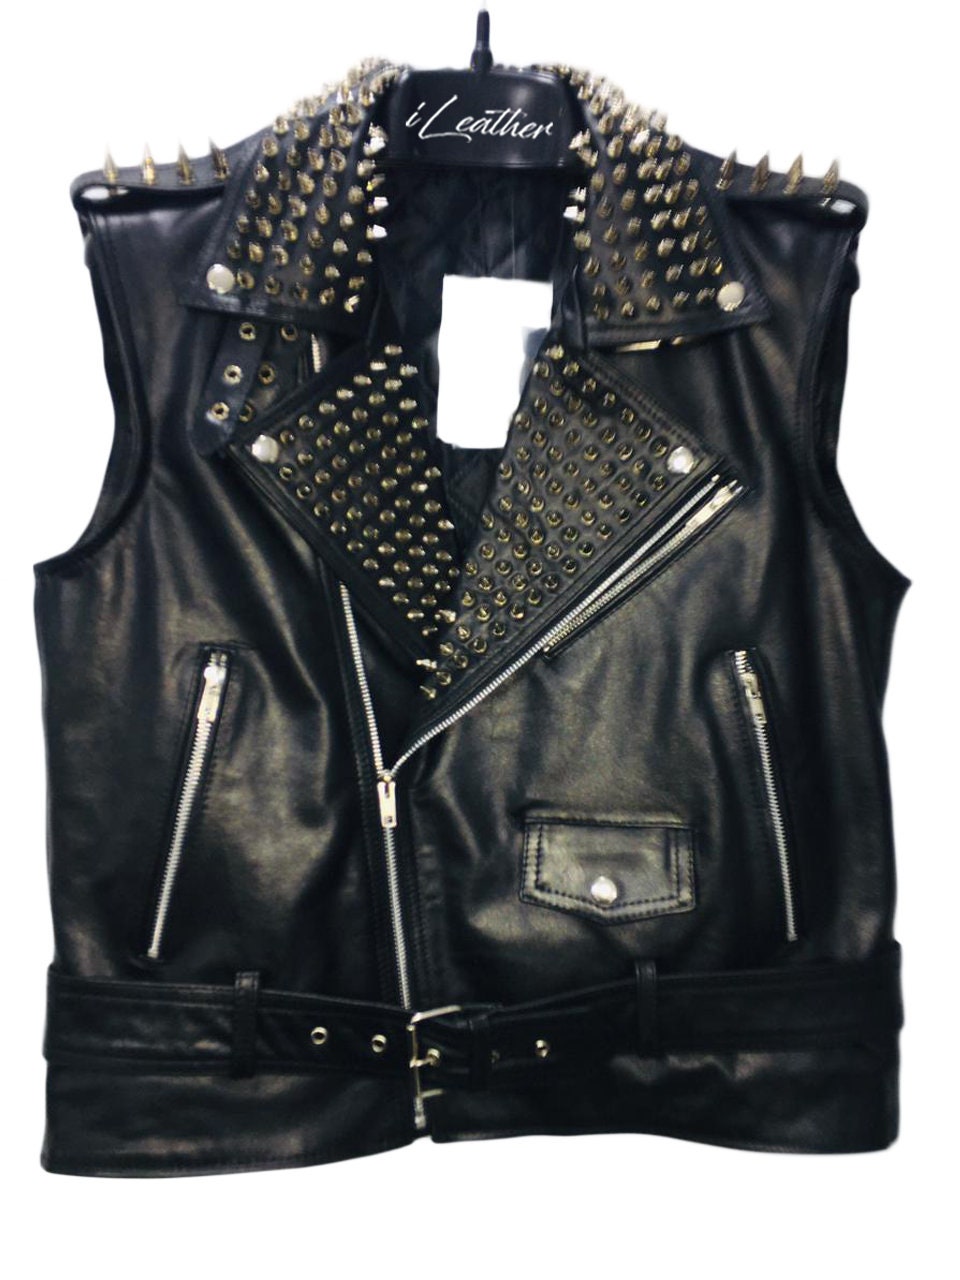 Steam Punk Studded Sleeveless Leather Handmade Jacket For Men | Etsy